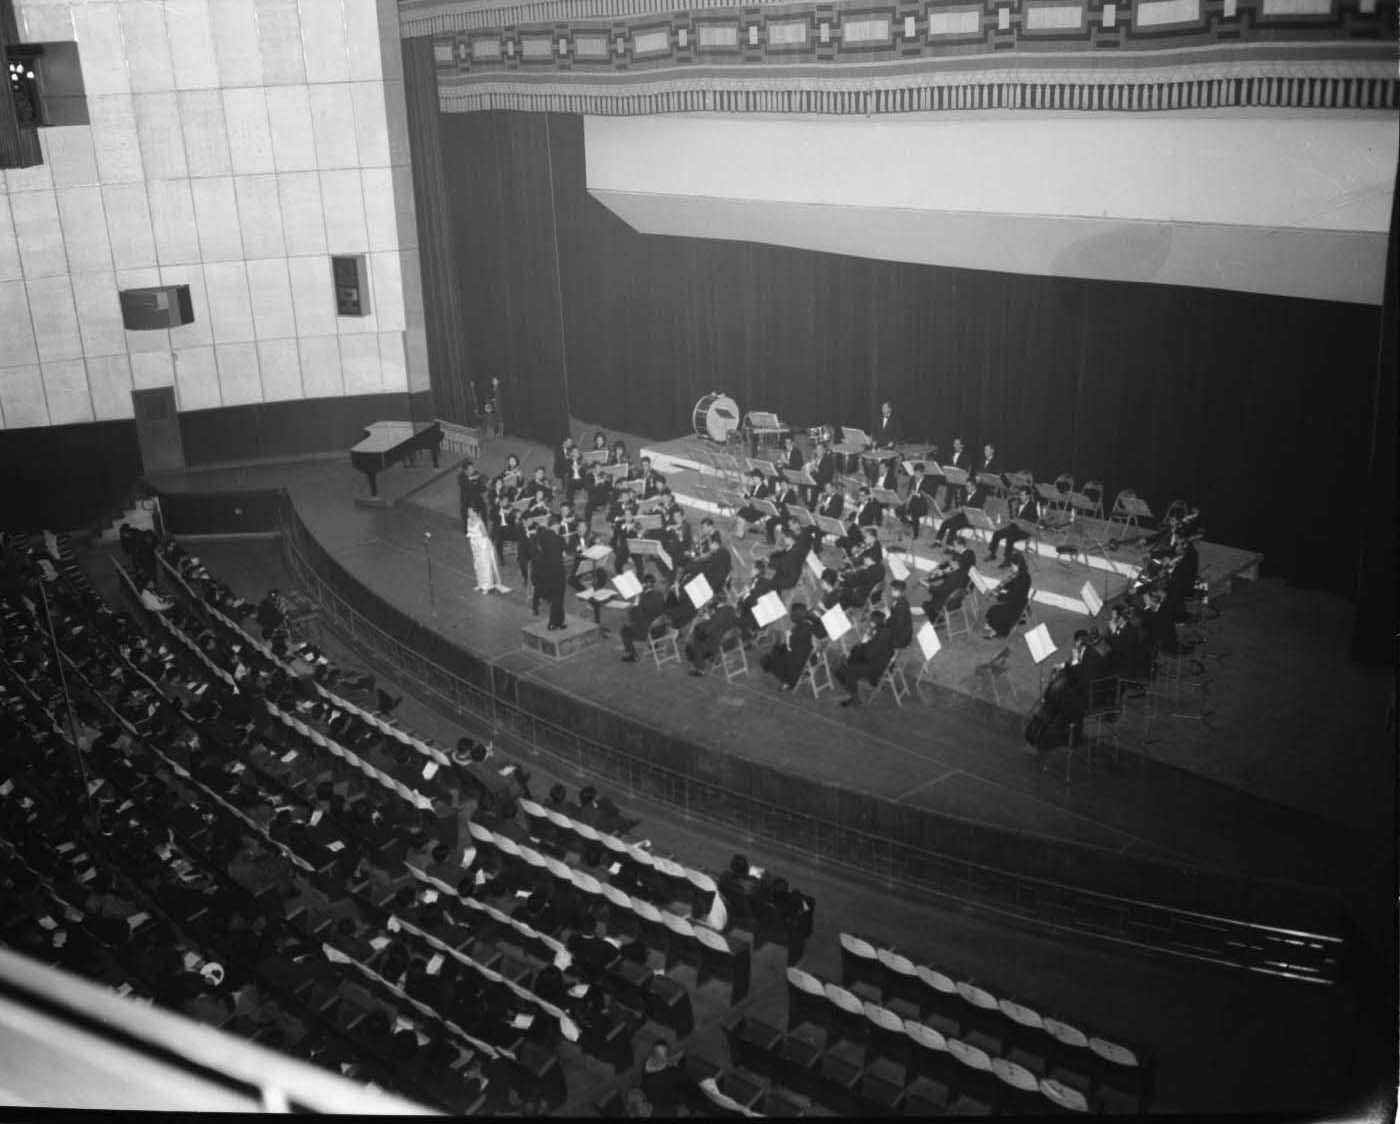 시민회관에서 공연하고 있는 시립교향악단과 청중들의 모습을 위에서 찍은 사진